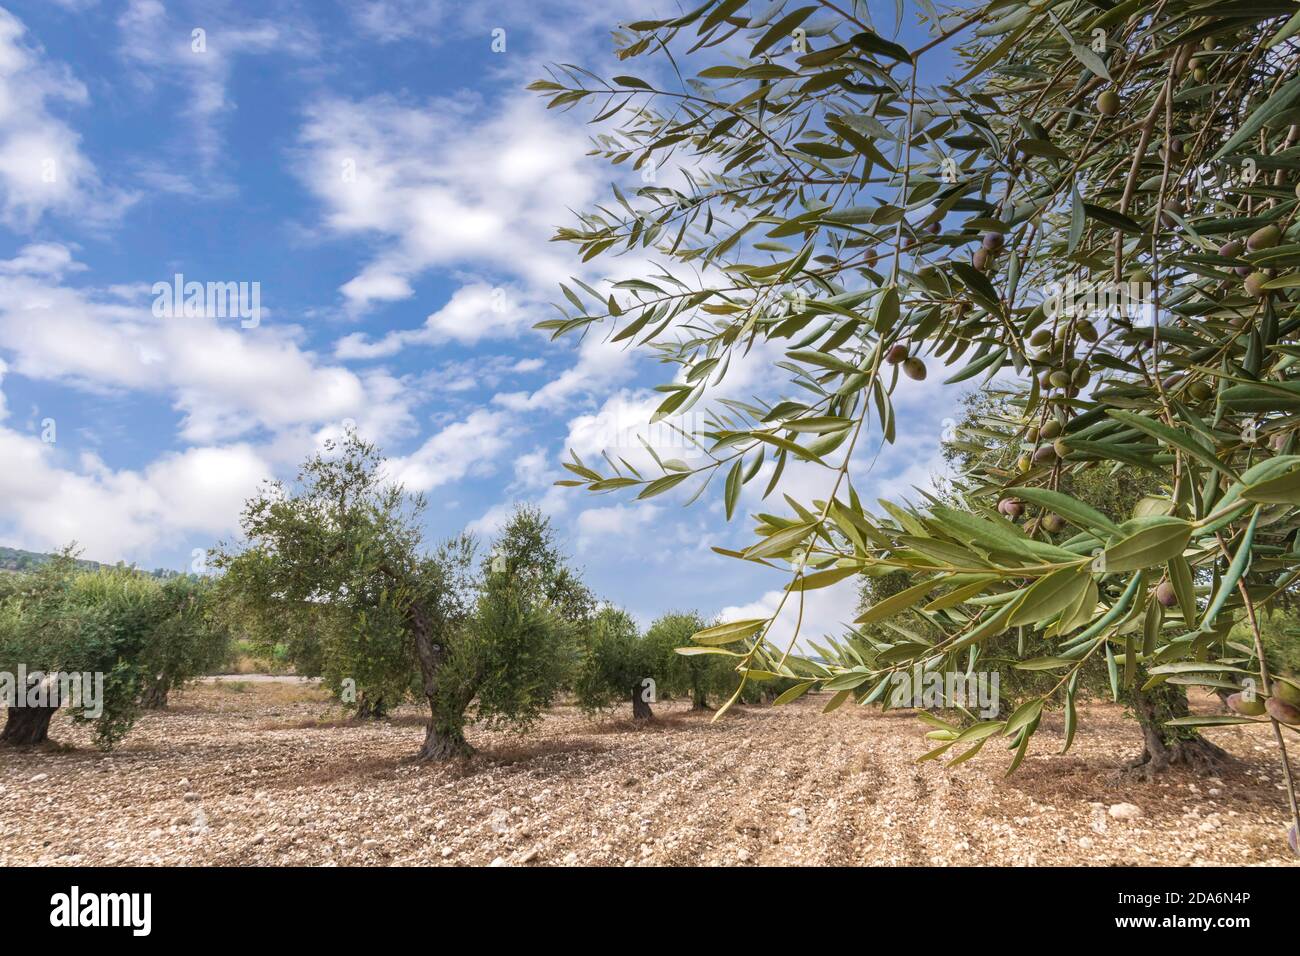 Olivenbaumgarten mit unreifen Früchten gegen den blauen Himmel Mit Wolken Stockfoto